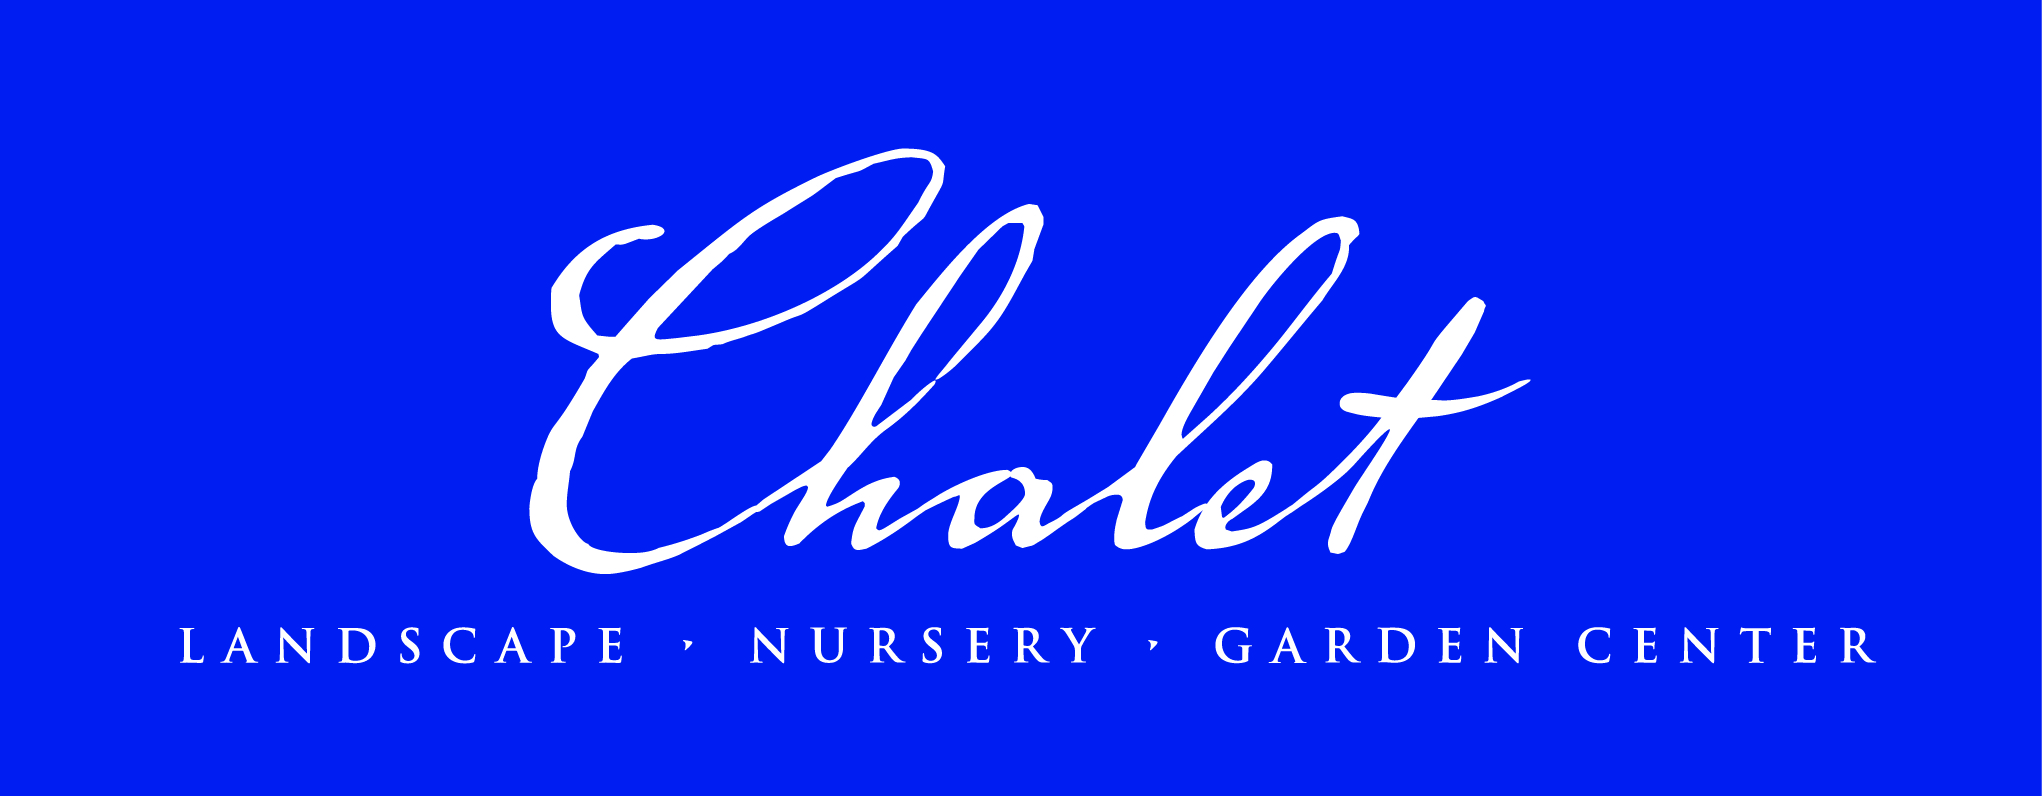 Chalet logo white reverse on blue 072